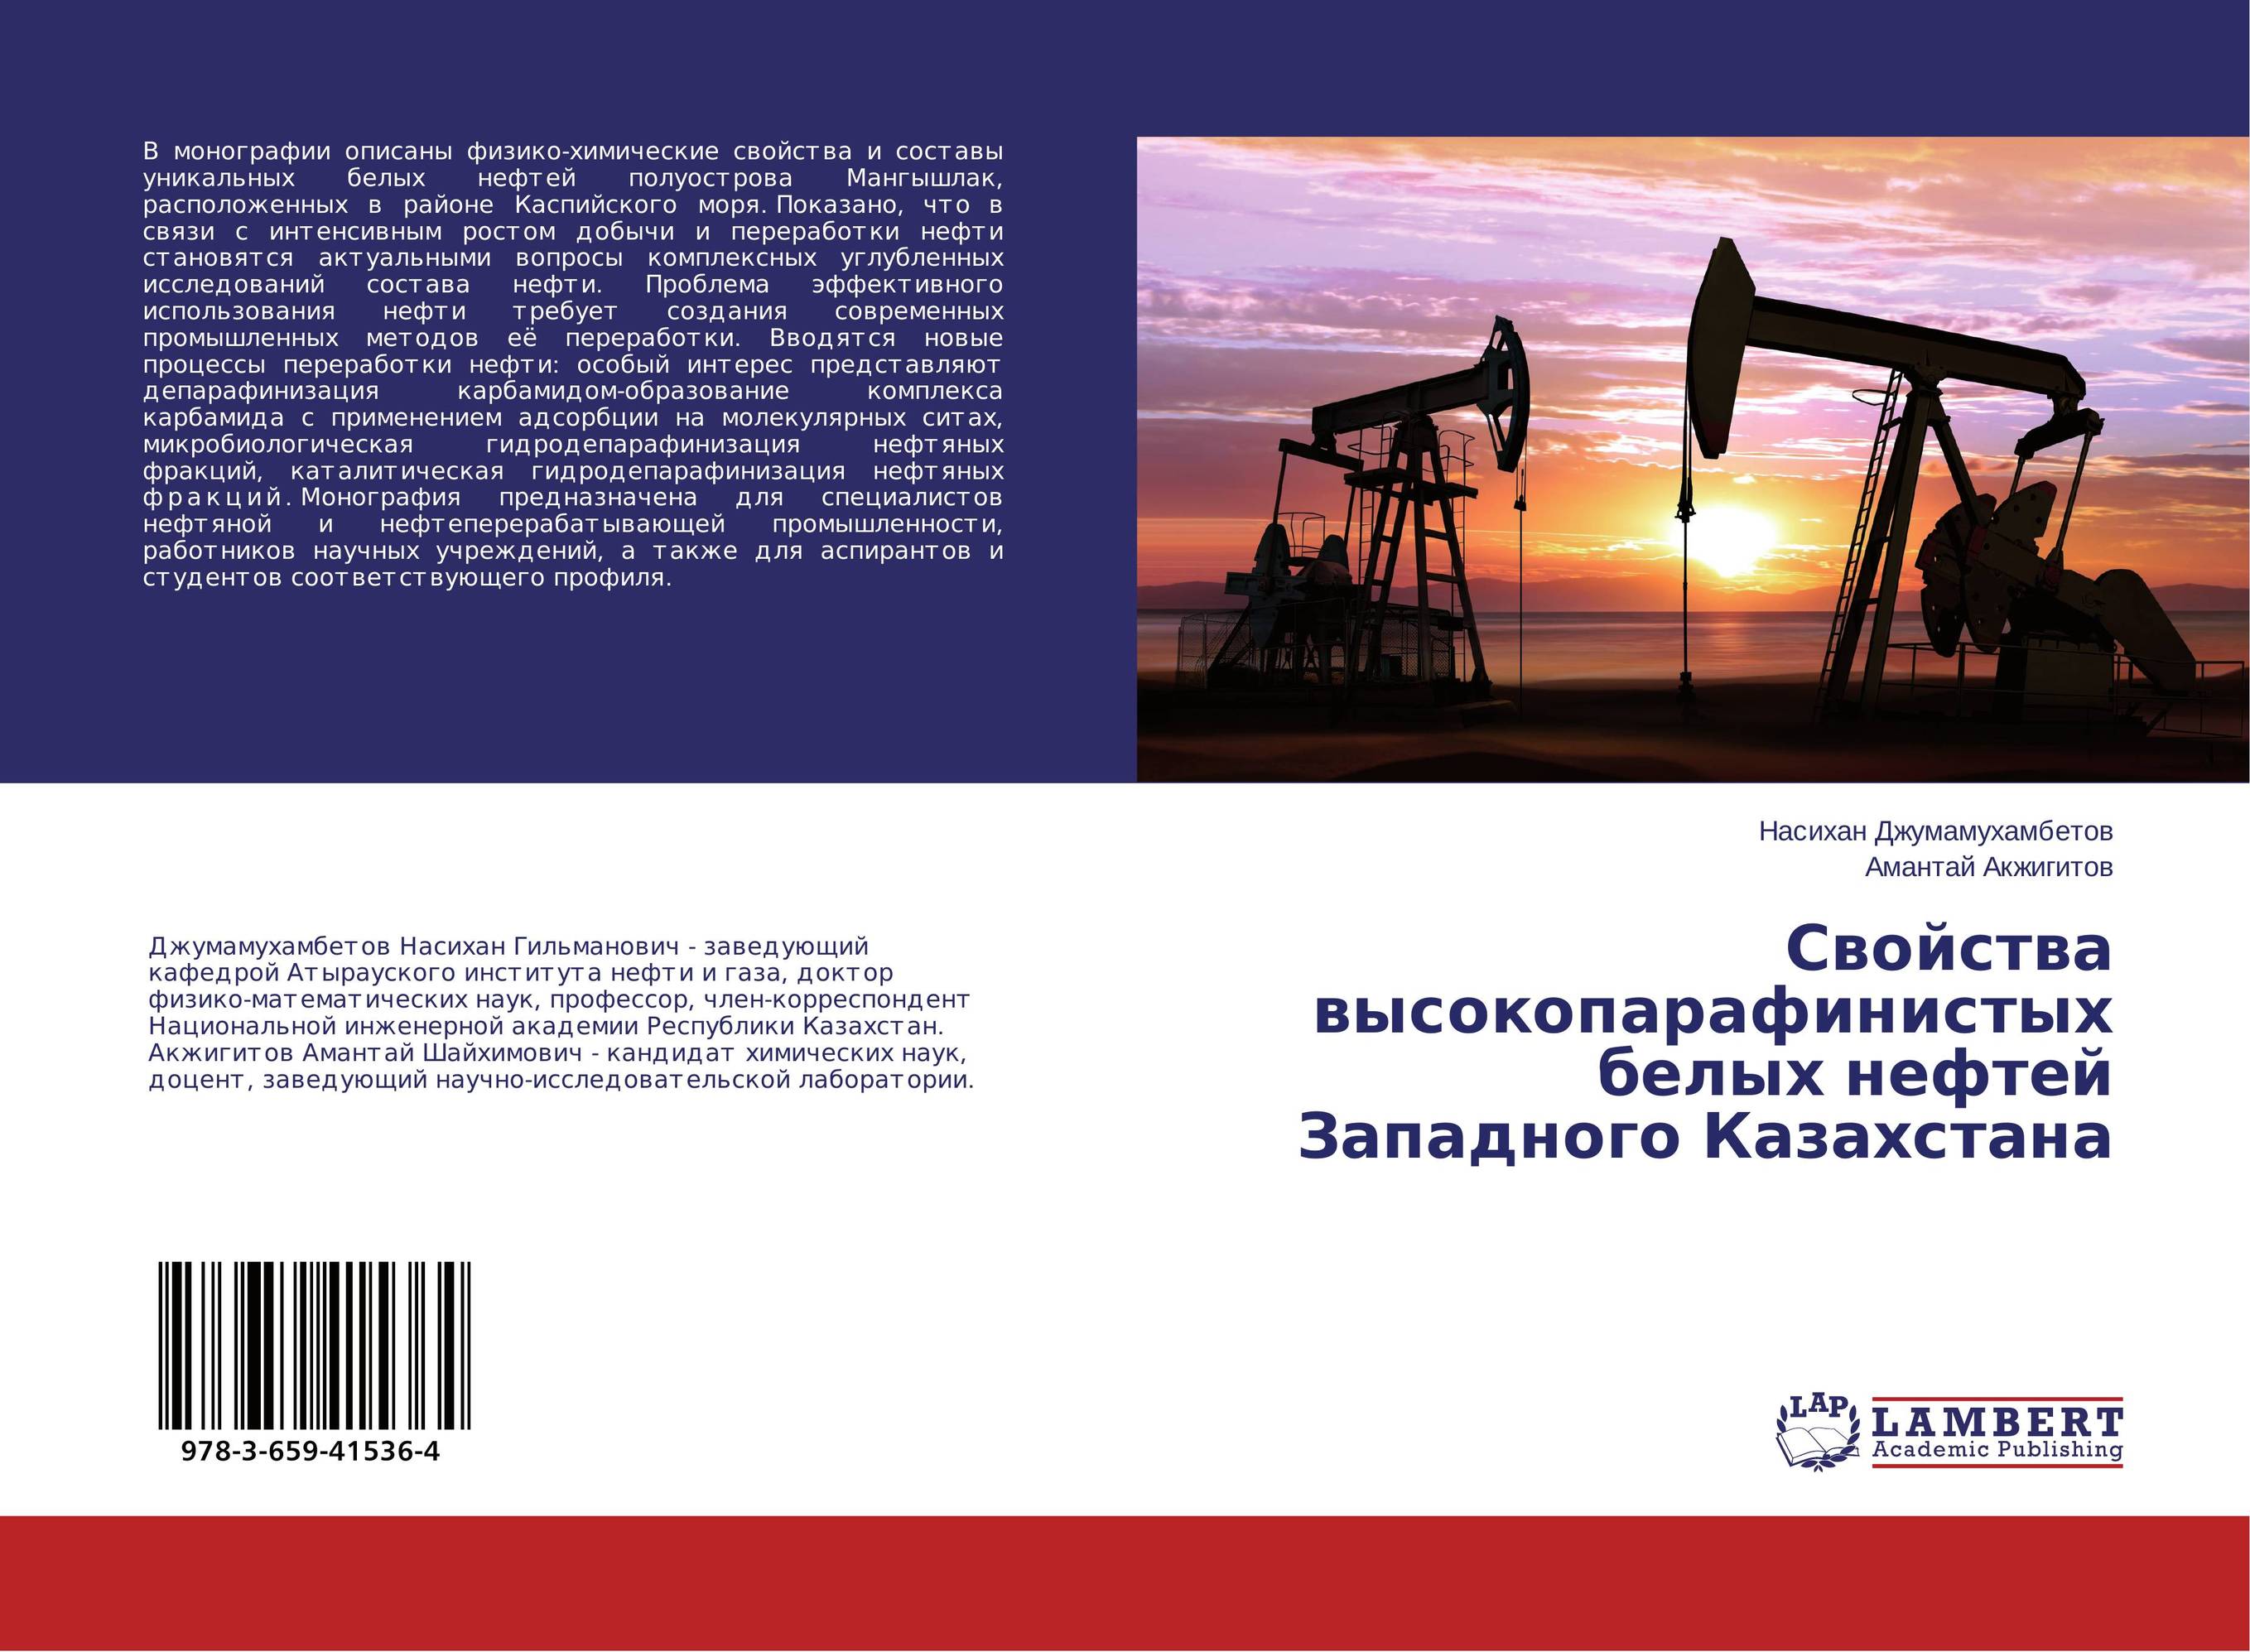 
        Свойства высокопарафинистых белых нефтей Западного Казахстана..
      